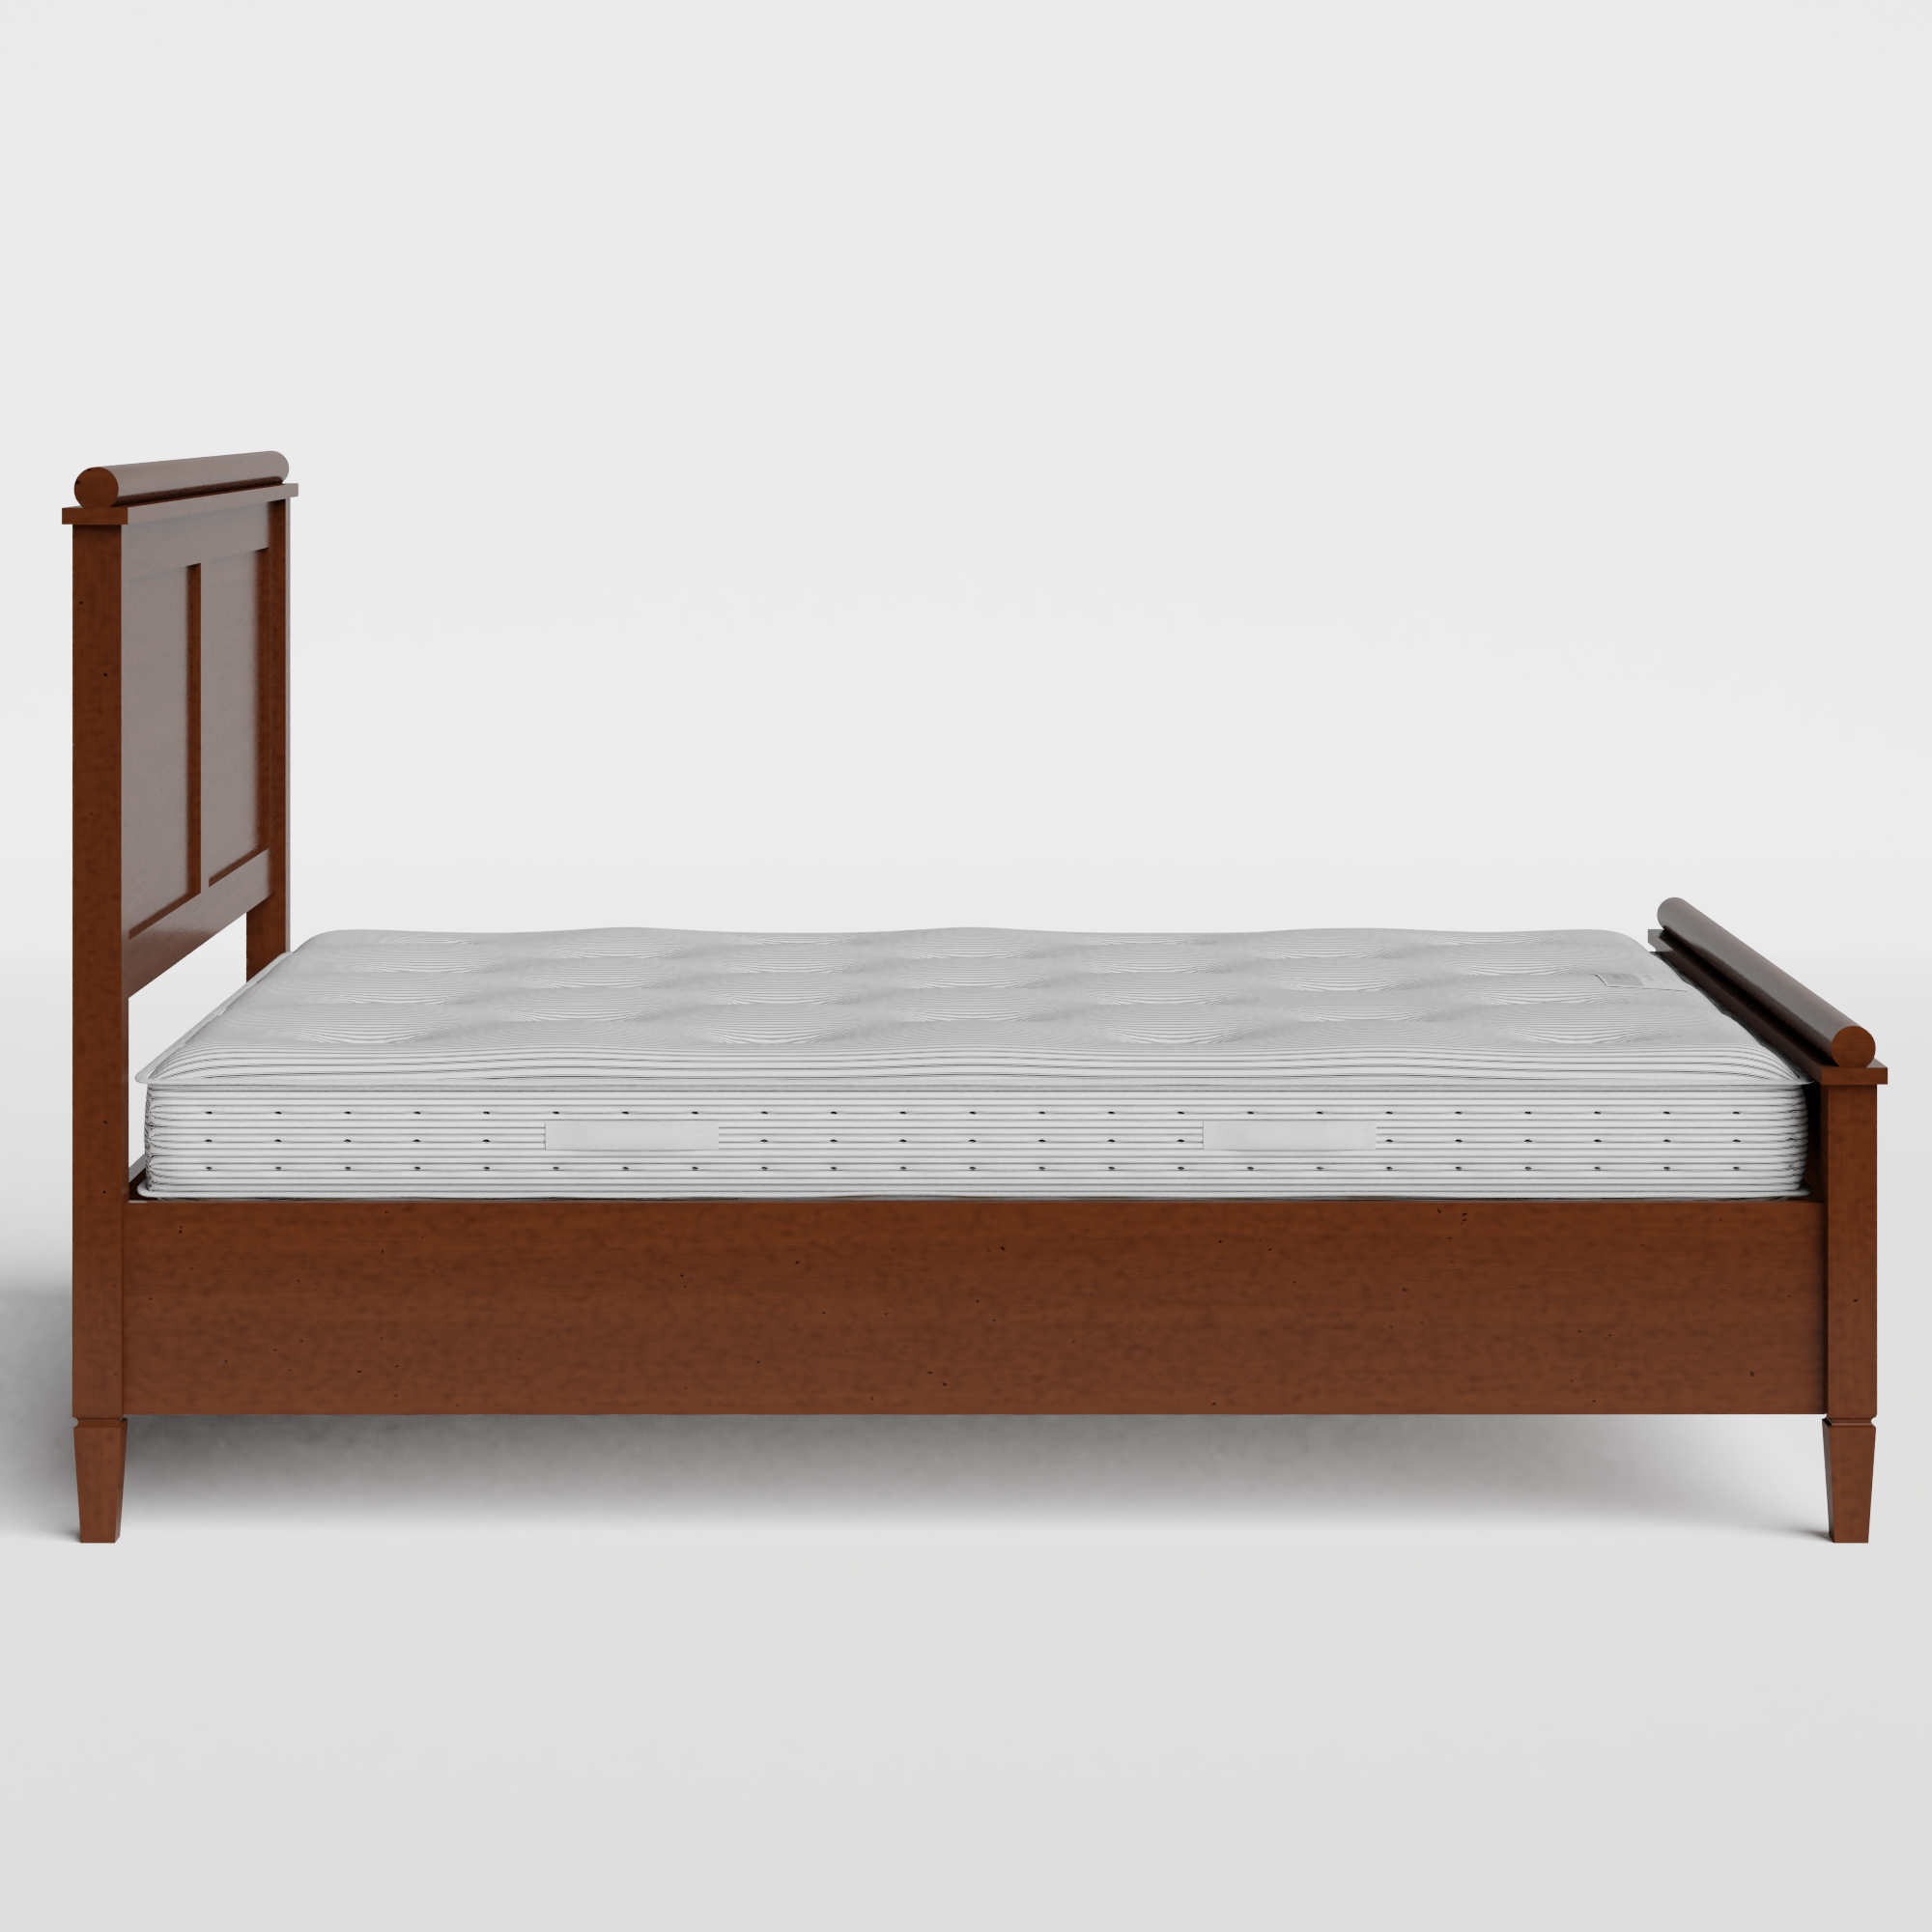 Nocturne wood bed in dark cherry with Juno mattress